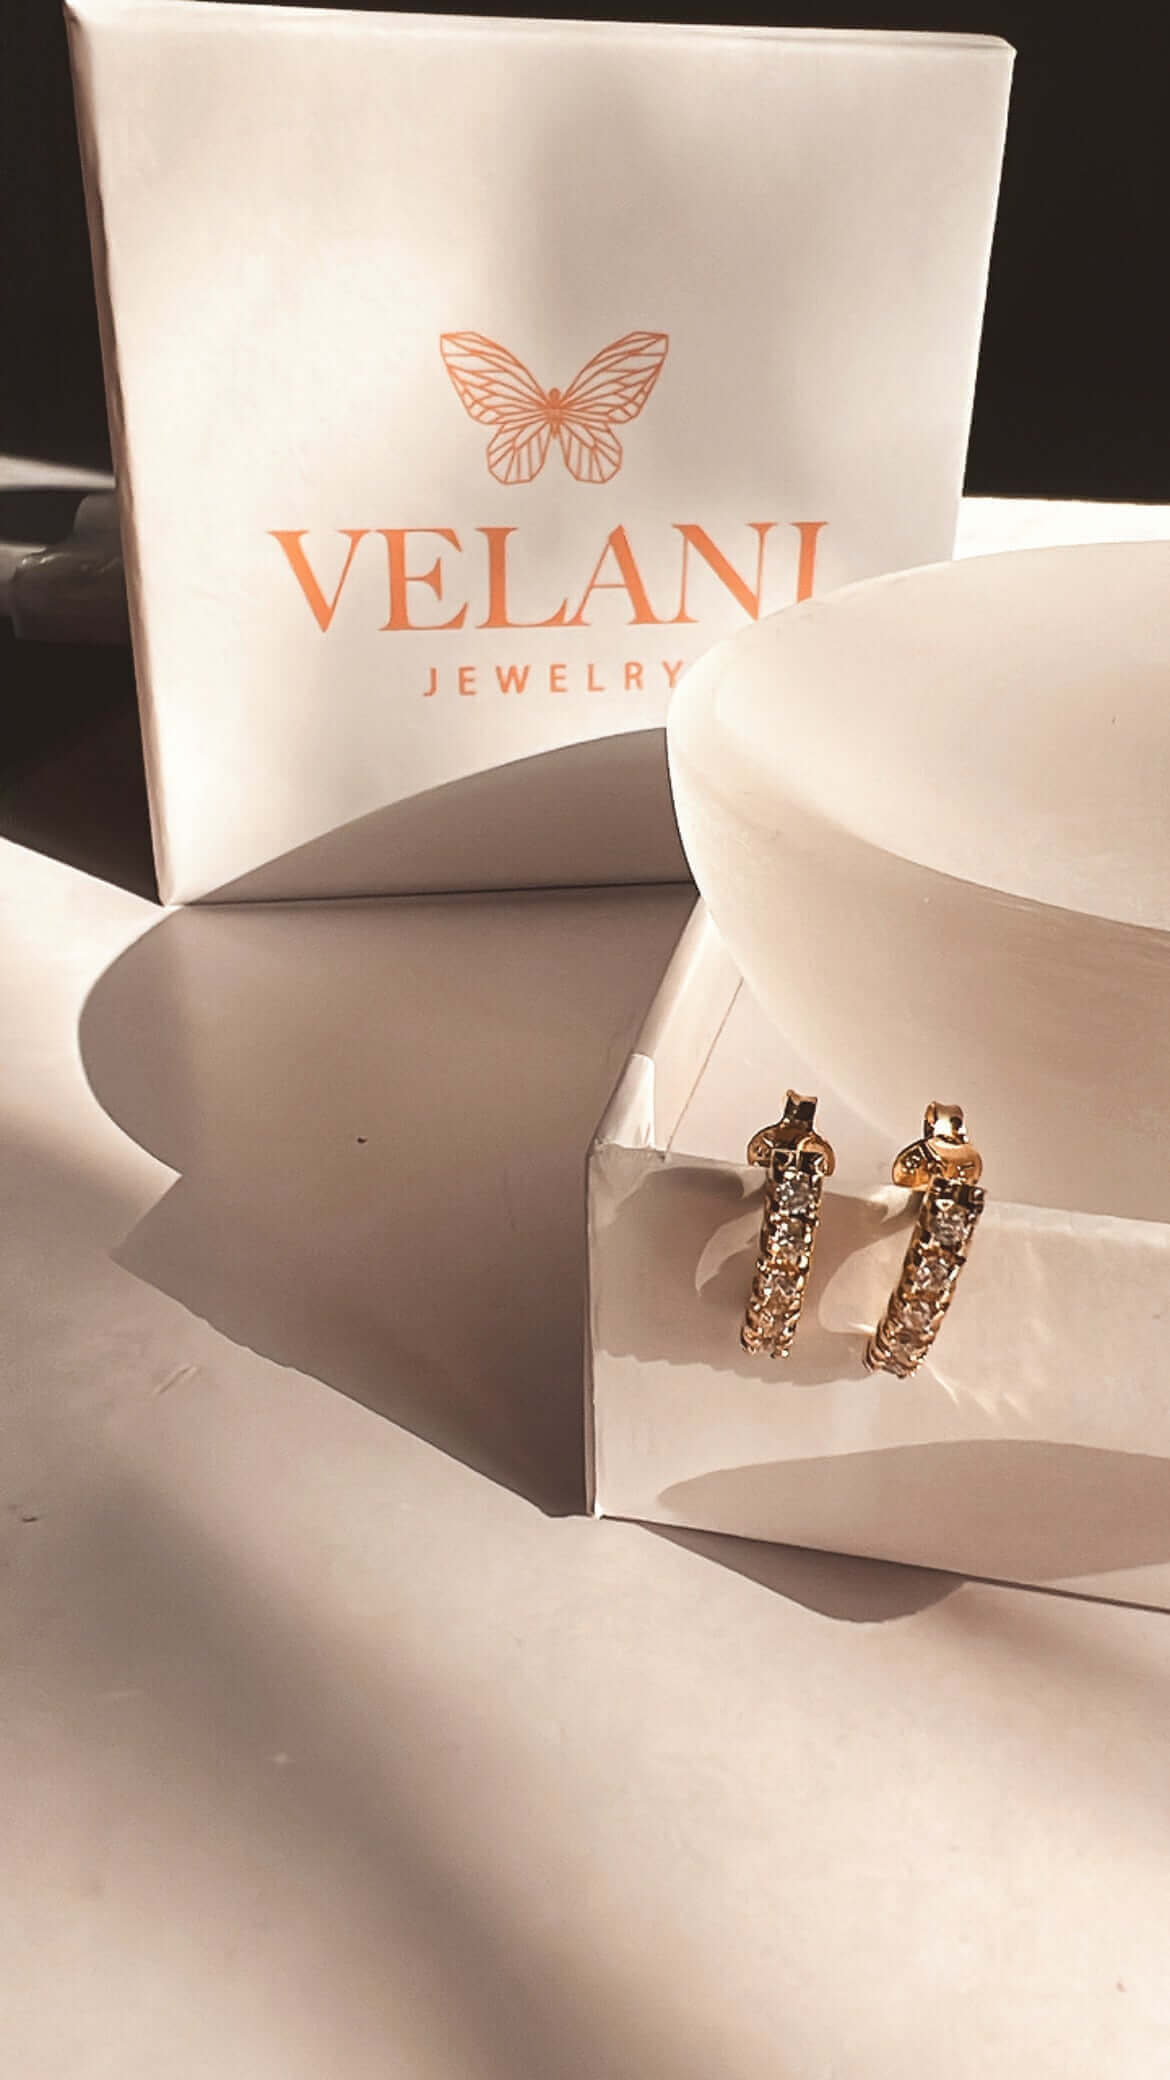 Velani Jewelry 5 CZ Studs Earrings